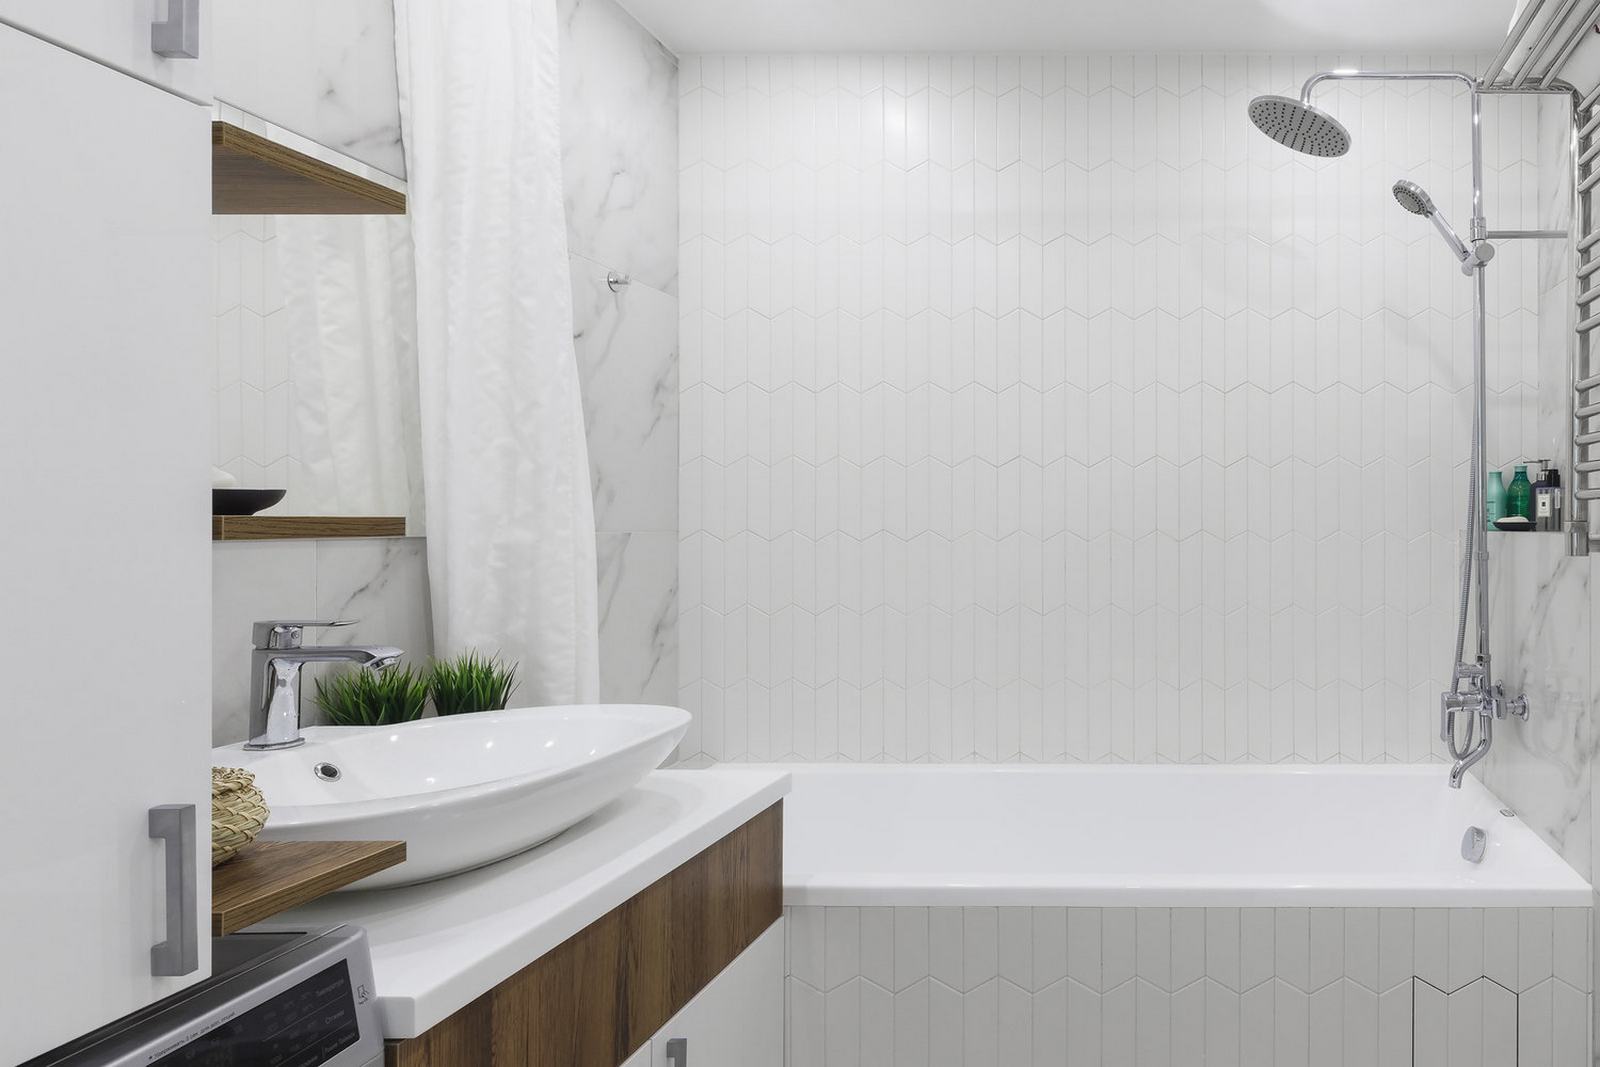 Bồn tắm nằm vòi sen được phân vùng với nhà vệ sinh bằng tấm rèm che màu trắng chất liệu mỏng nhẹ vừa tạo sự riêng tư nhưng cũng không gây cảm giác thô cứng, chật chội.